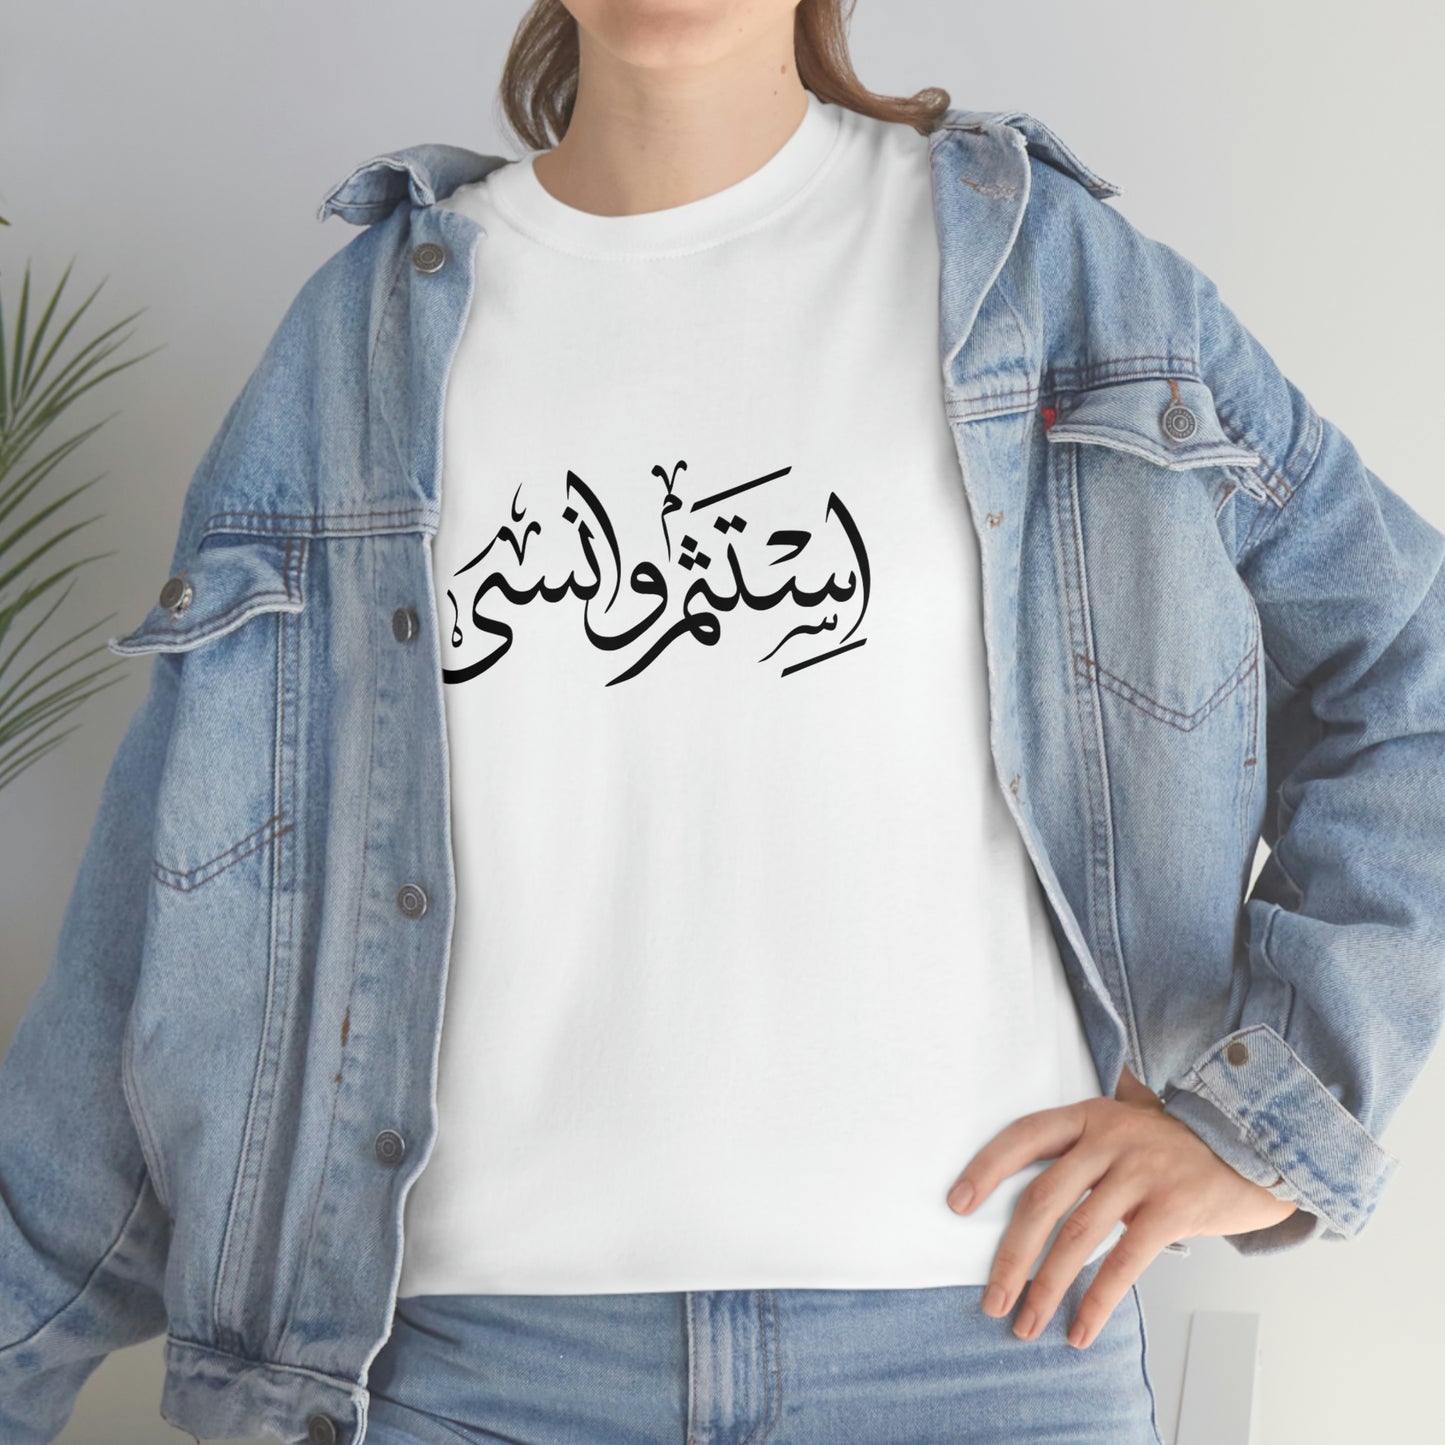 Caligrafía árabe "Invierte y olvida"